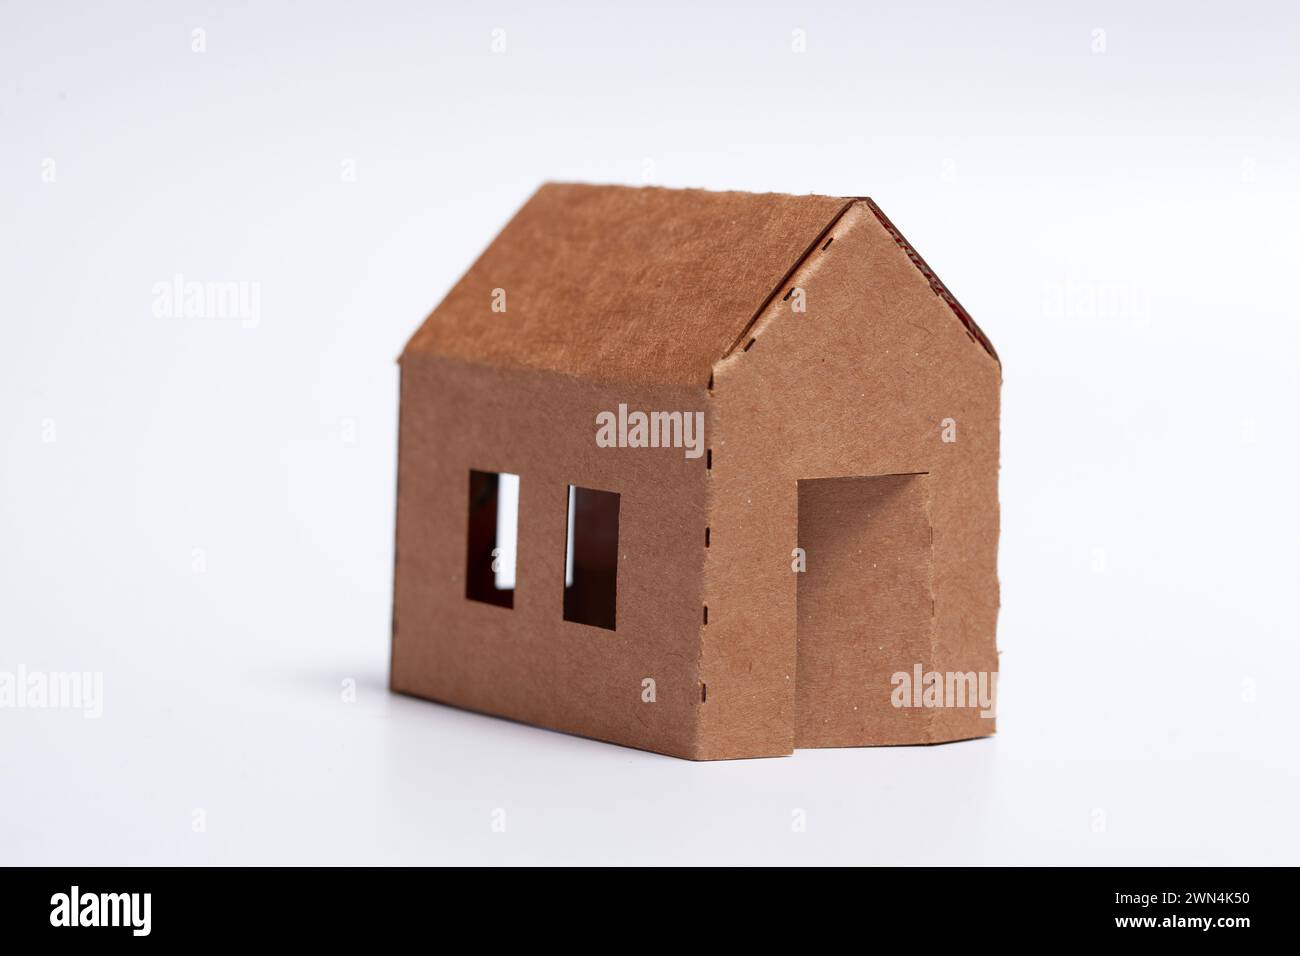 Einfaches Heimwerkerfamilienhaus - Pappmodell auf weißem Hintergrund Stockfoto